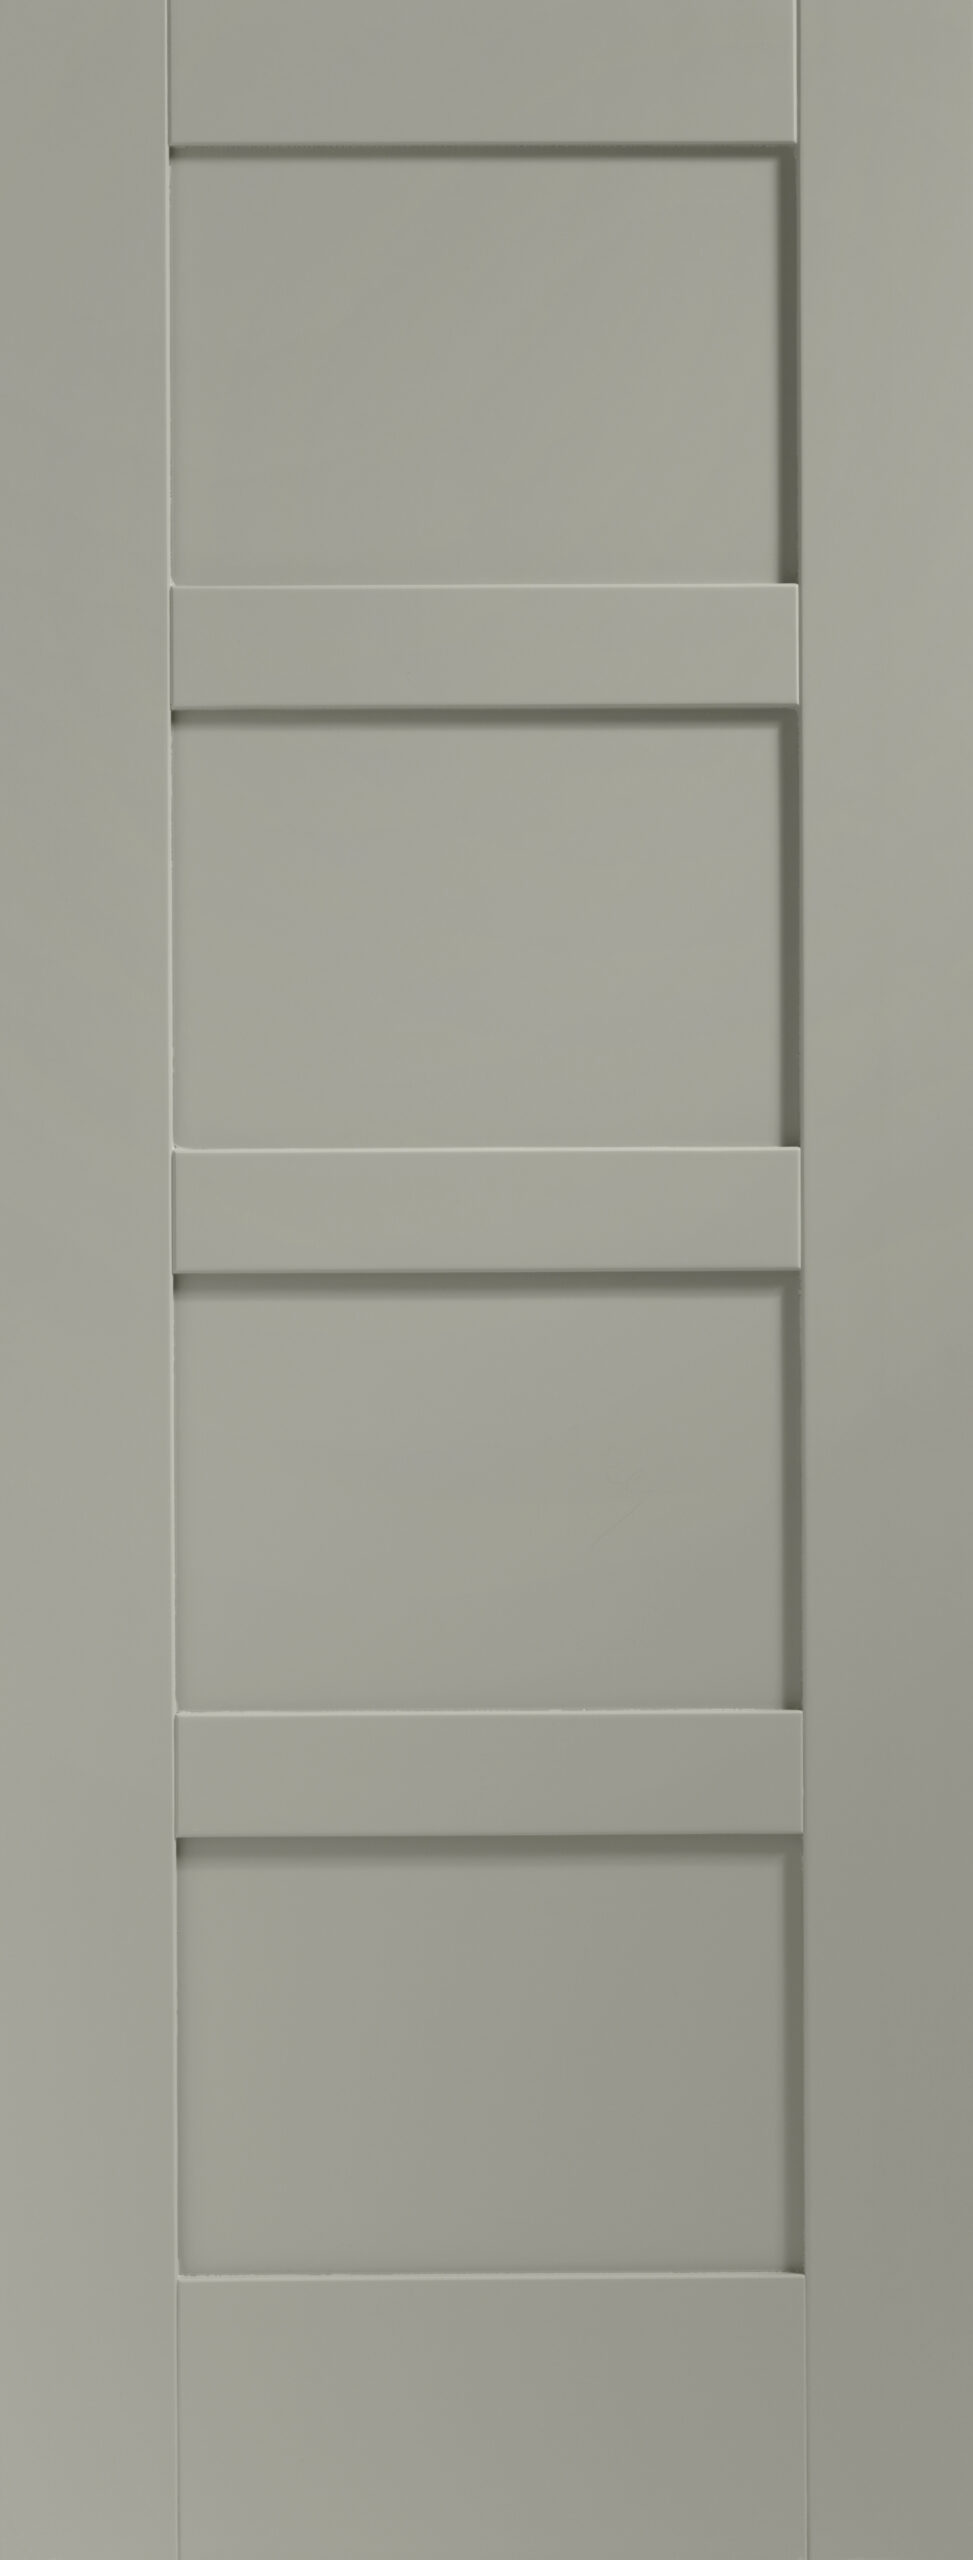 Shaker 4 Panel Internal White Primed Door – Slate, 2040 x 726 x 40 mm